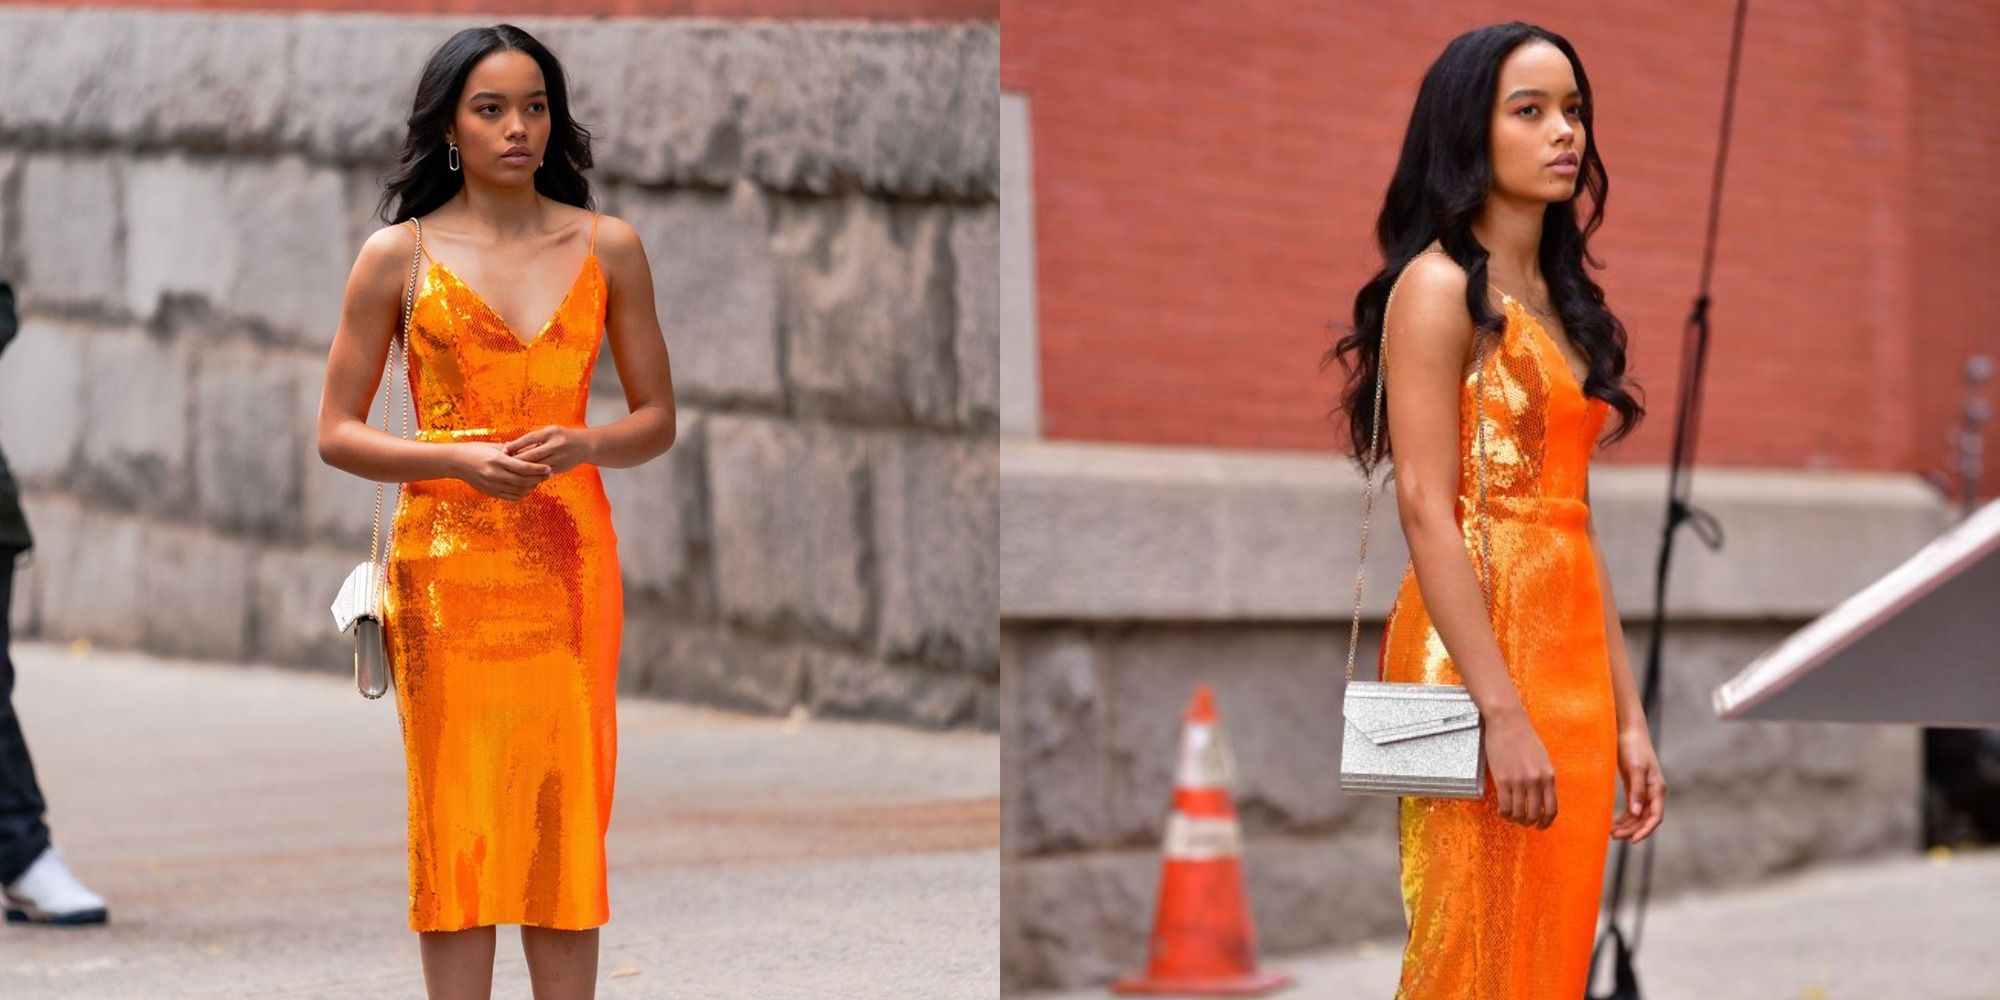 Split image of Zoya in an orange dress on a sidewalk.